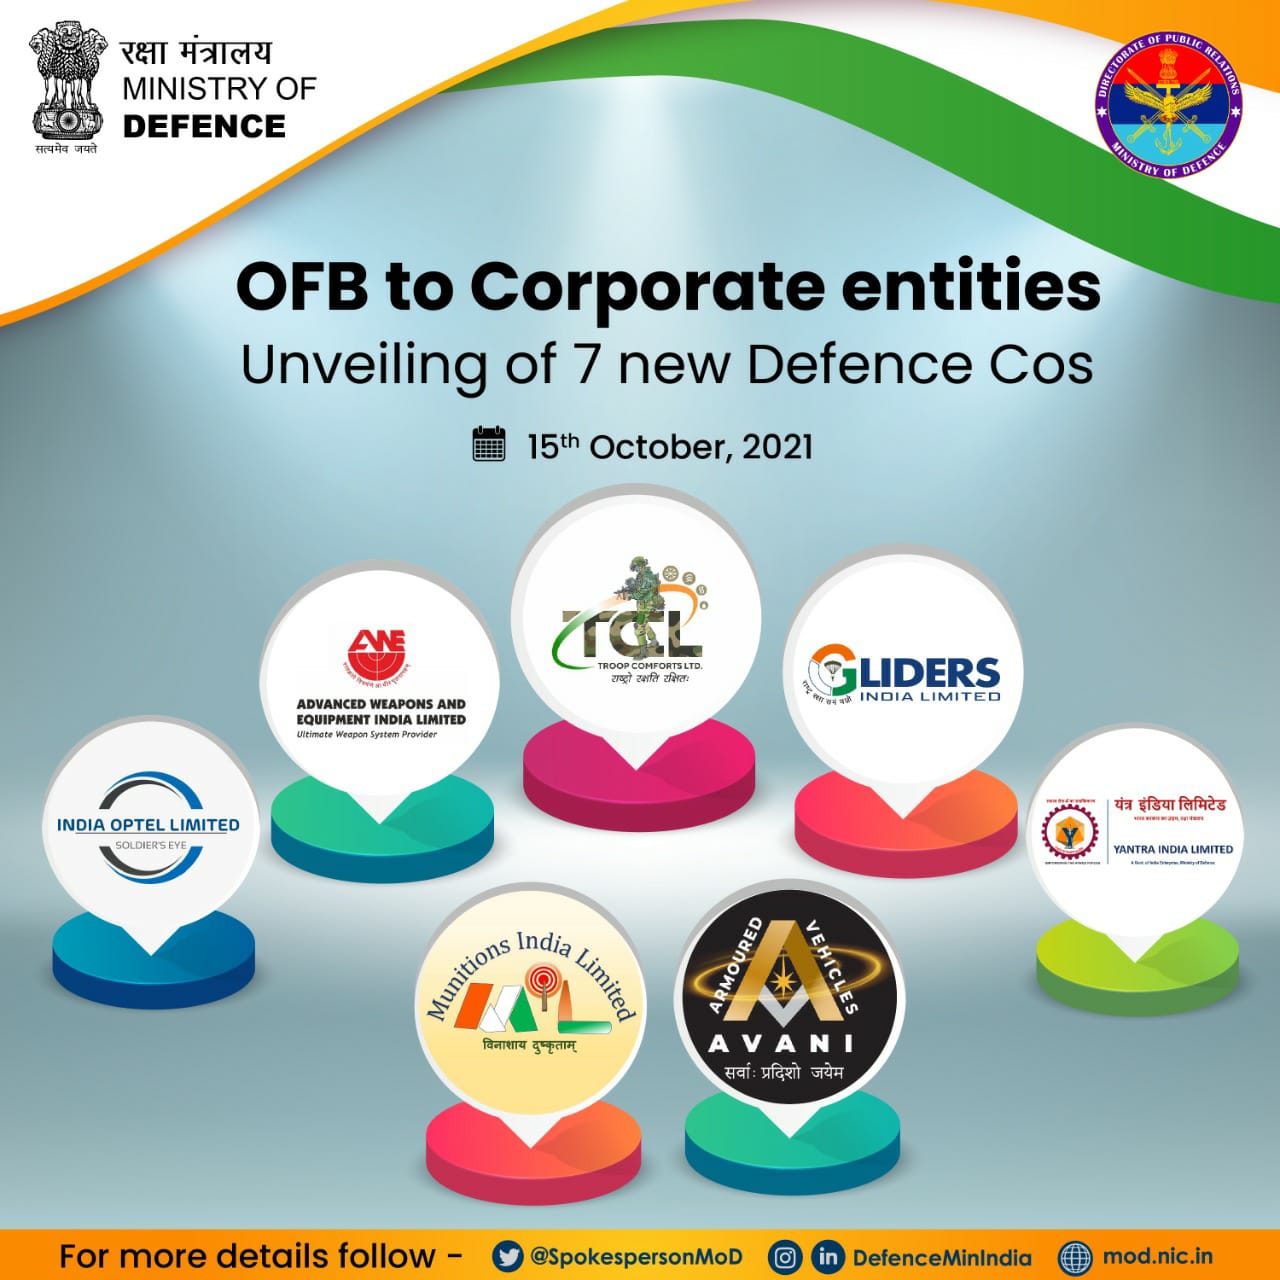 OFB के कॉरपोरेटाइजेशन के बाद दशहरे के दिन शुरू होंगी सात अलग-अलग कंपनियां, रक्षामंत्री करेंगे उद्घाटन